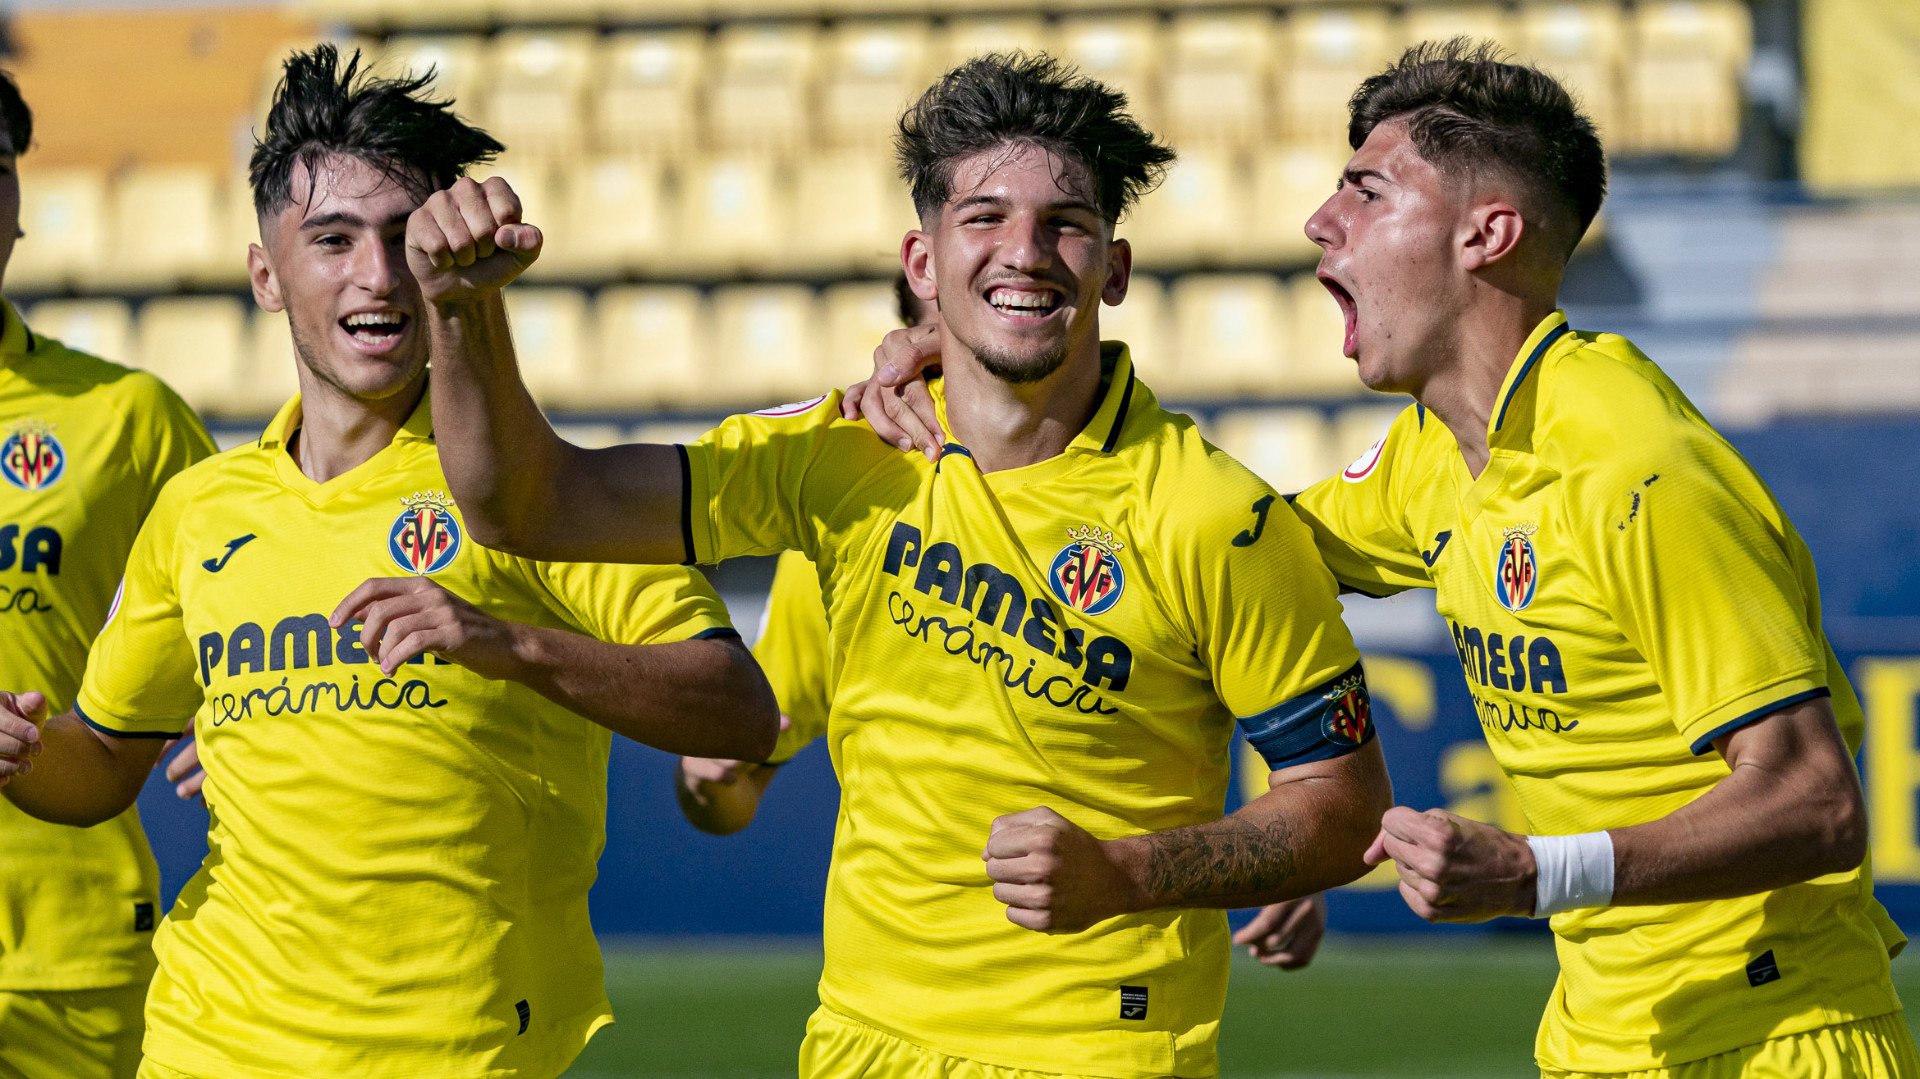 El en directo! - Web Oficial del Villarreal CF